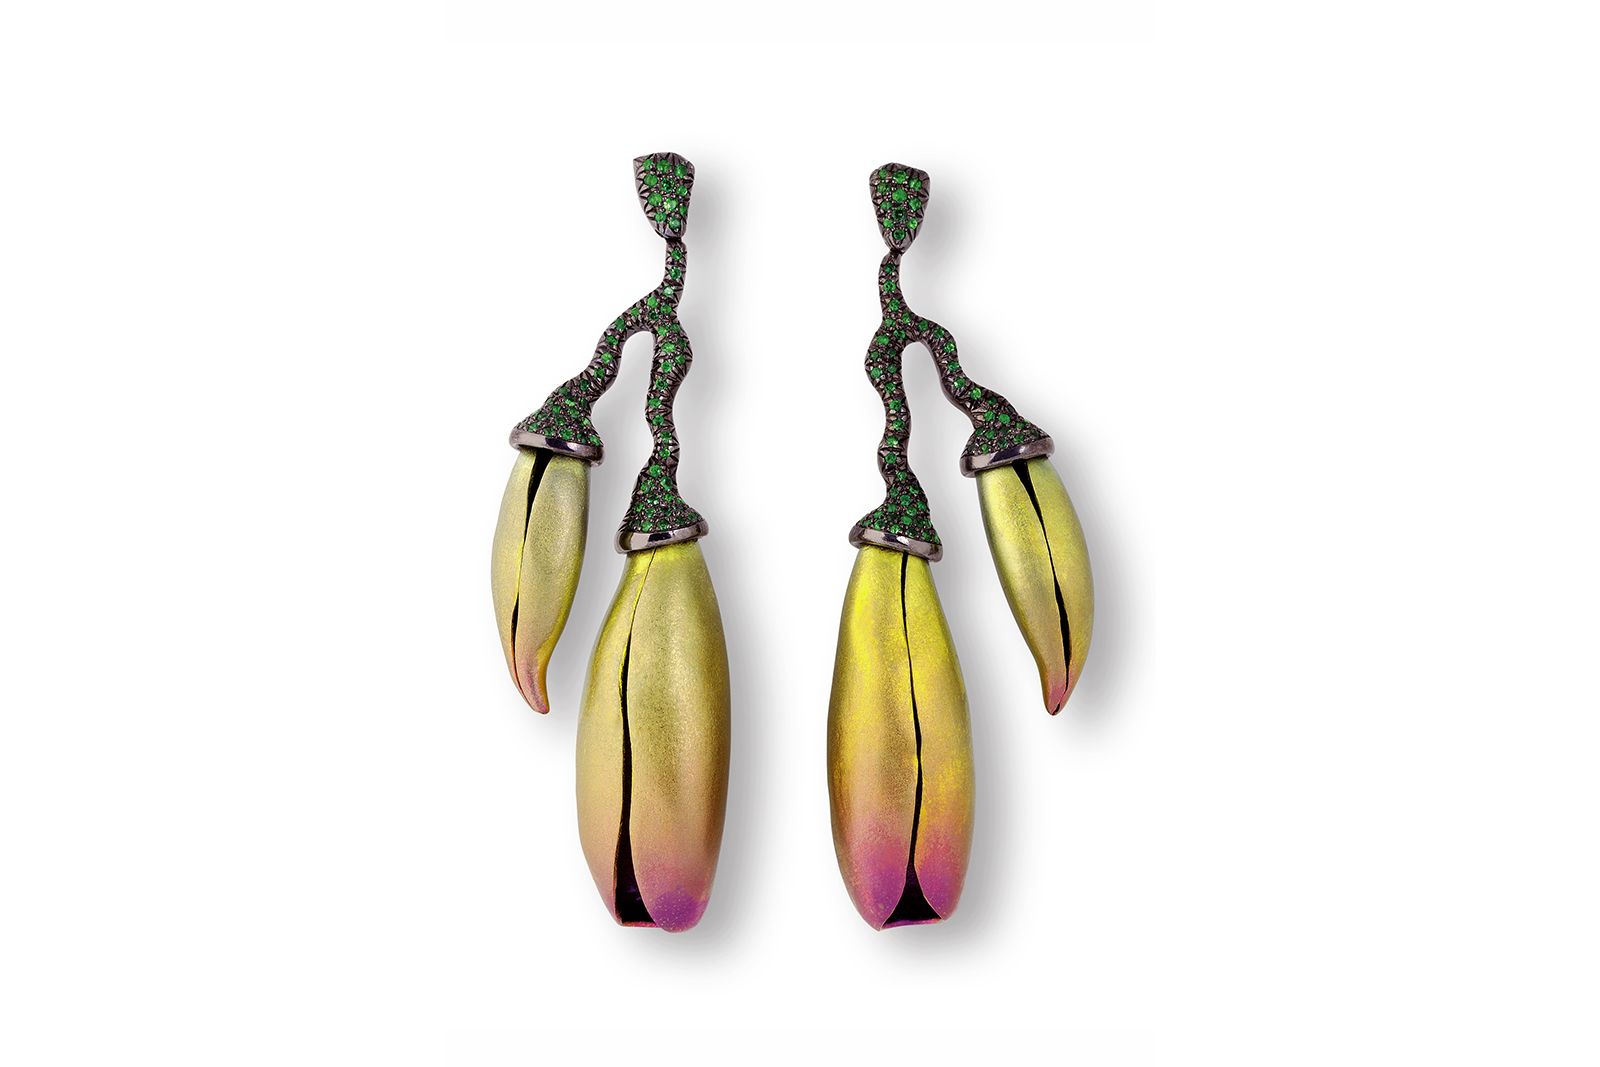 Fire Belleflower earrings by Jose Marin